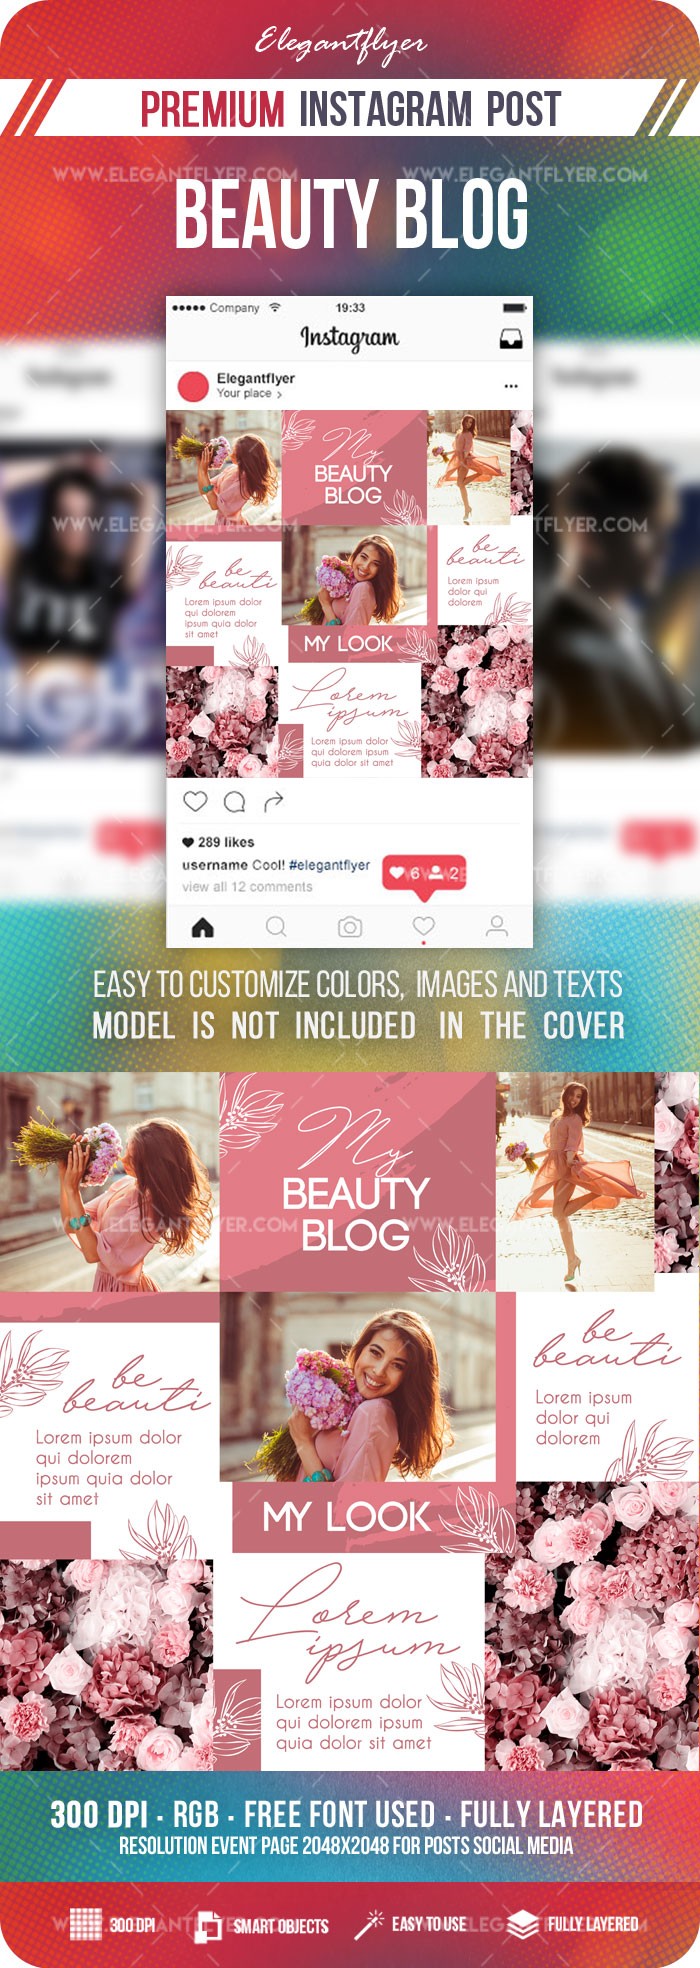 Blog de Beleza Instagram by ElegantFlyer